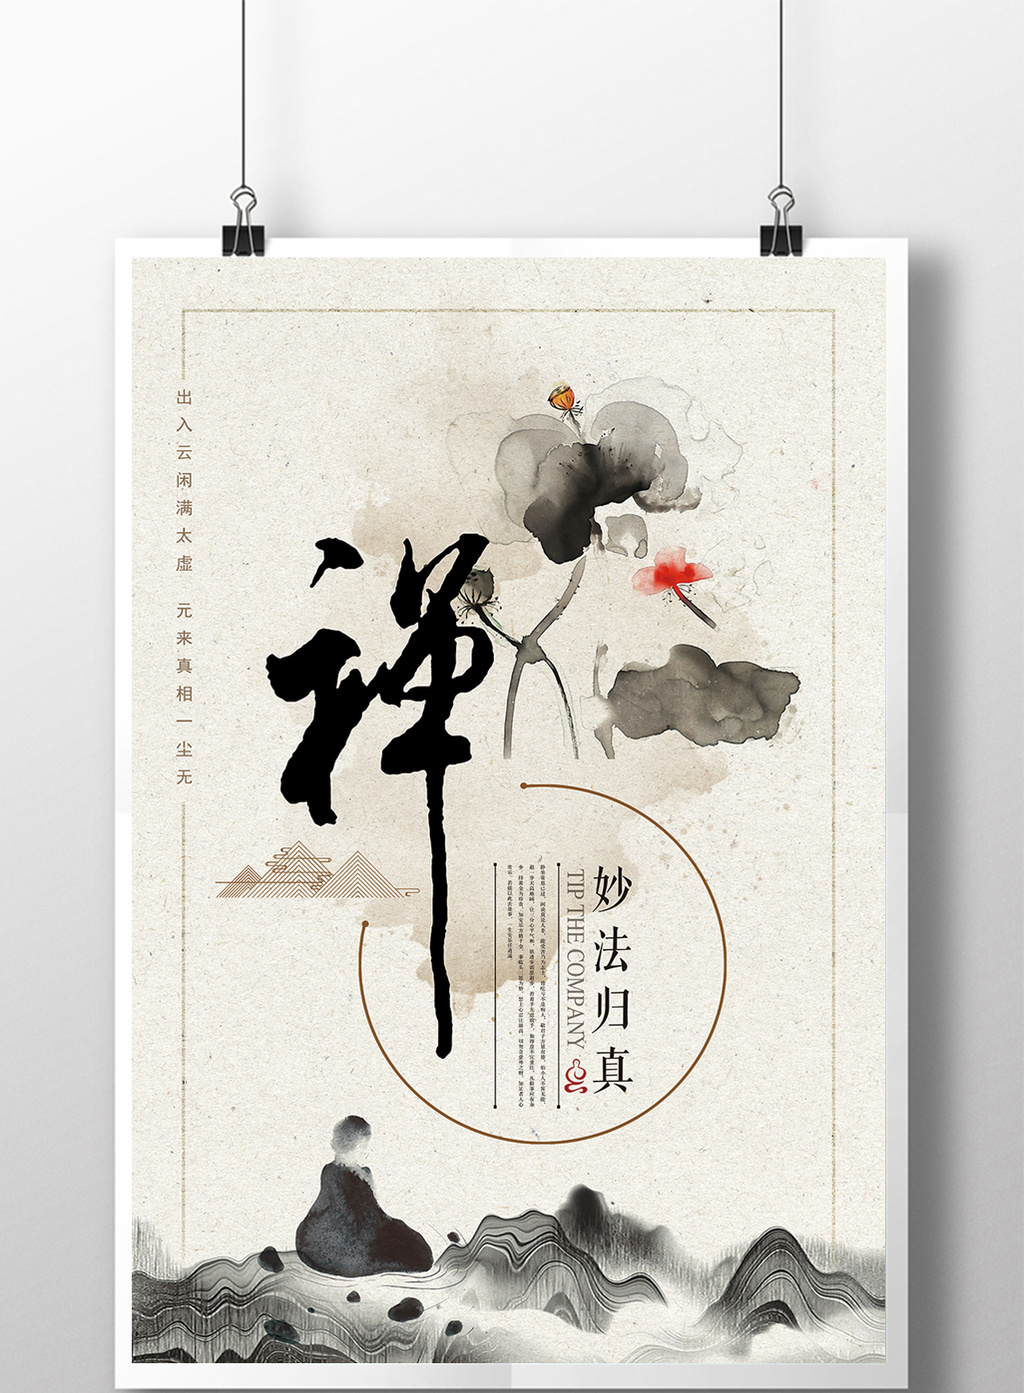 肖像权人物画像及字体仅供参考 包图网提供精美好看的简约中国风禅意